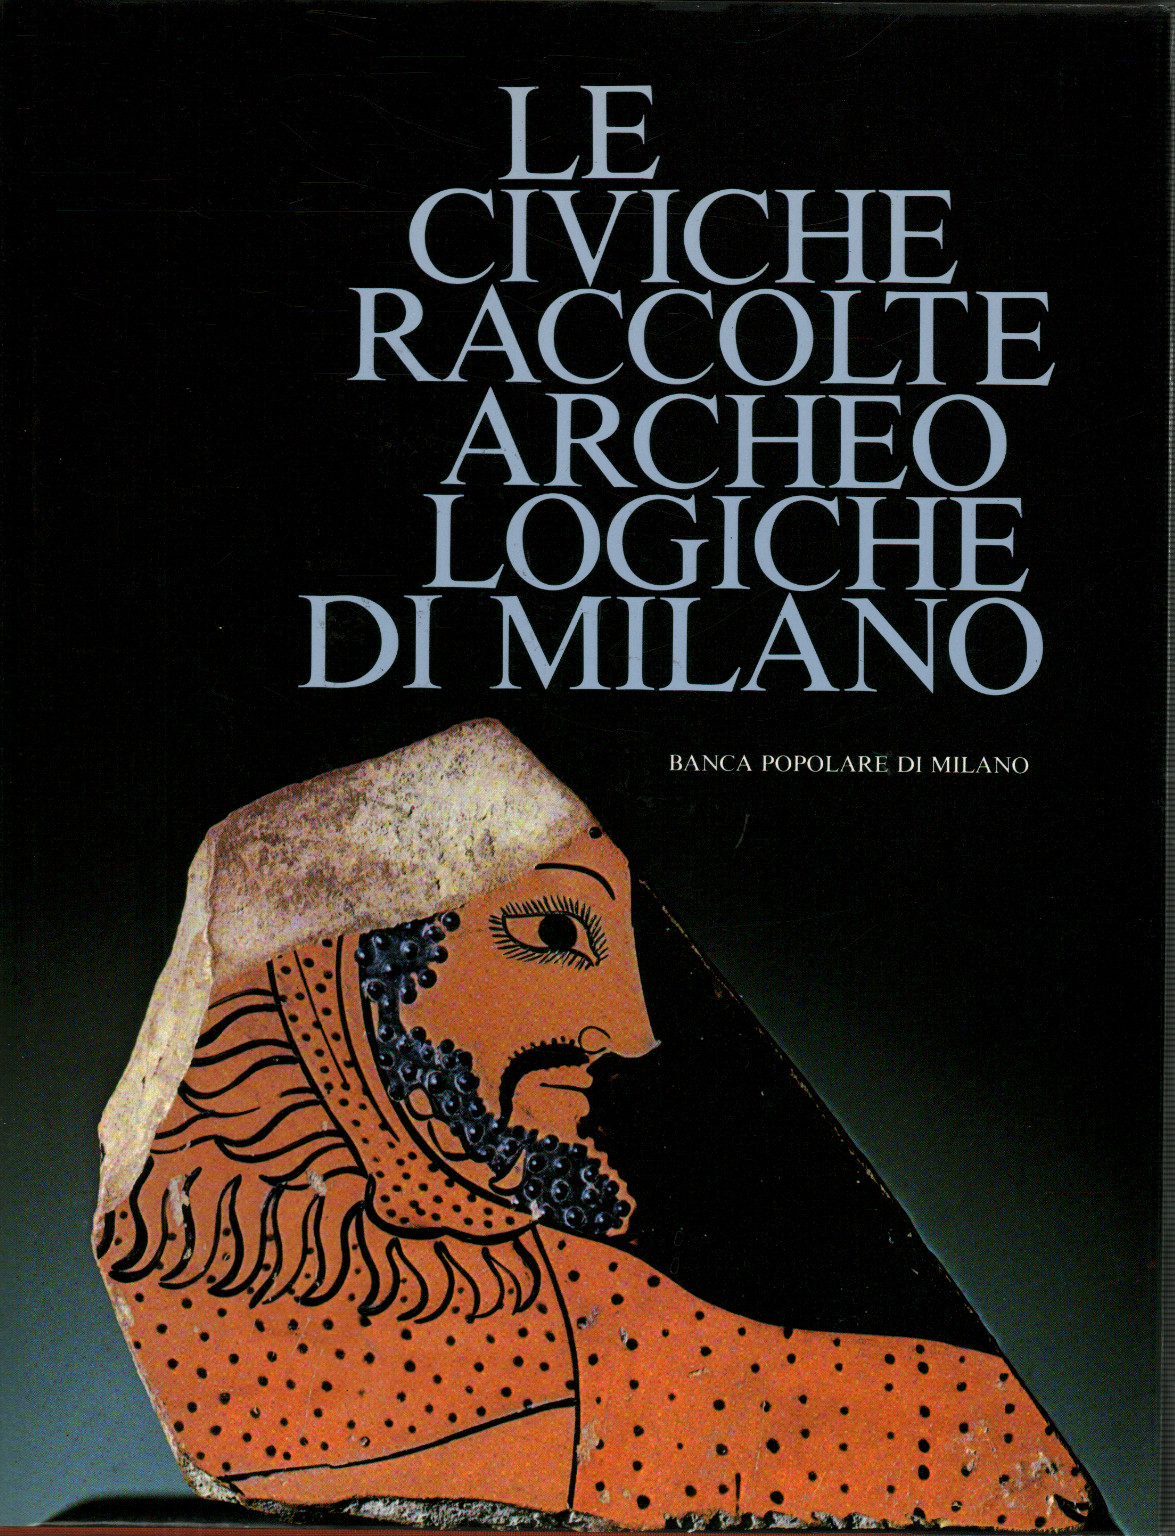 Les collections archéologiques civiques de Milan, s.a.